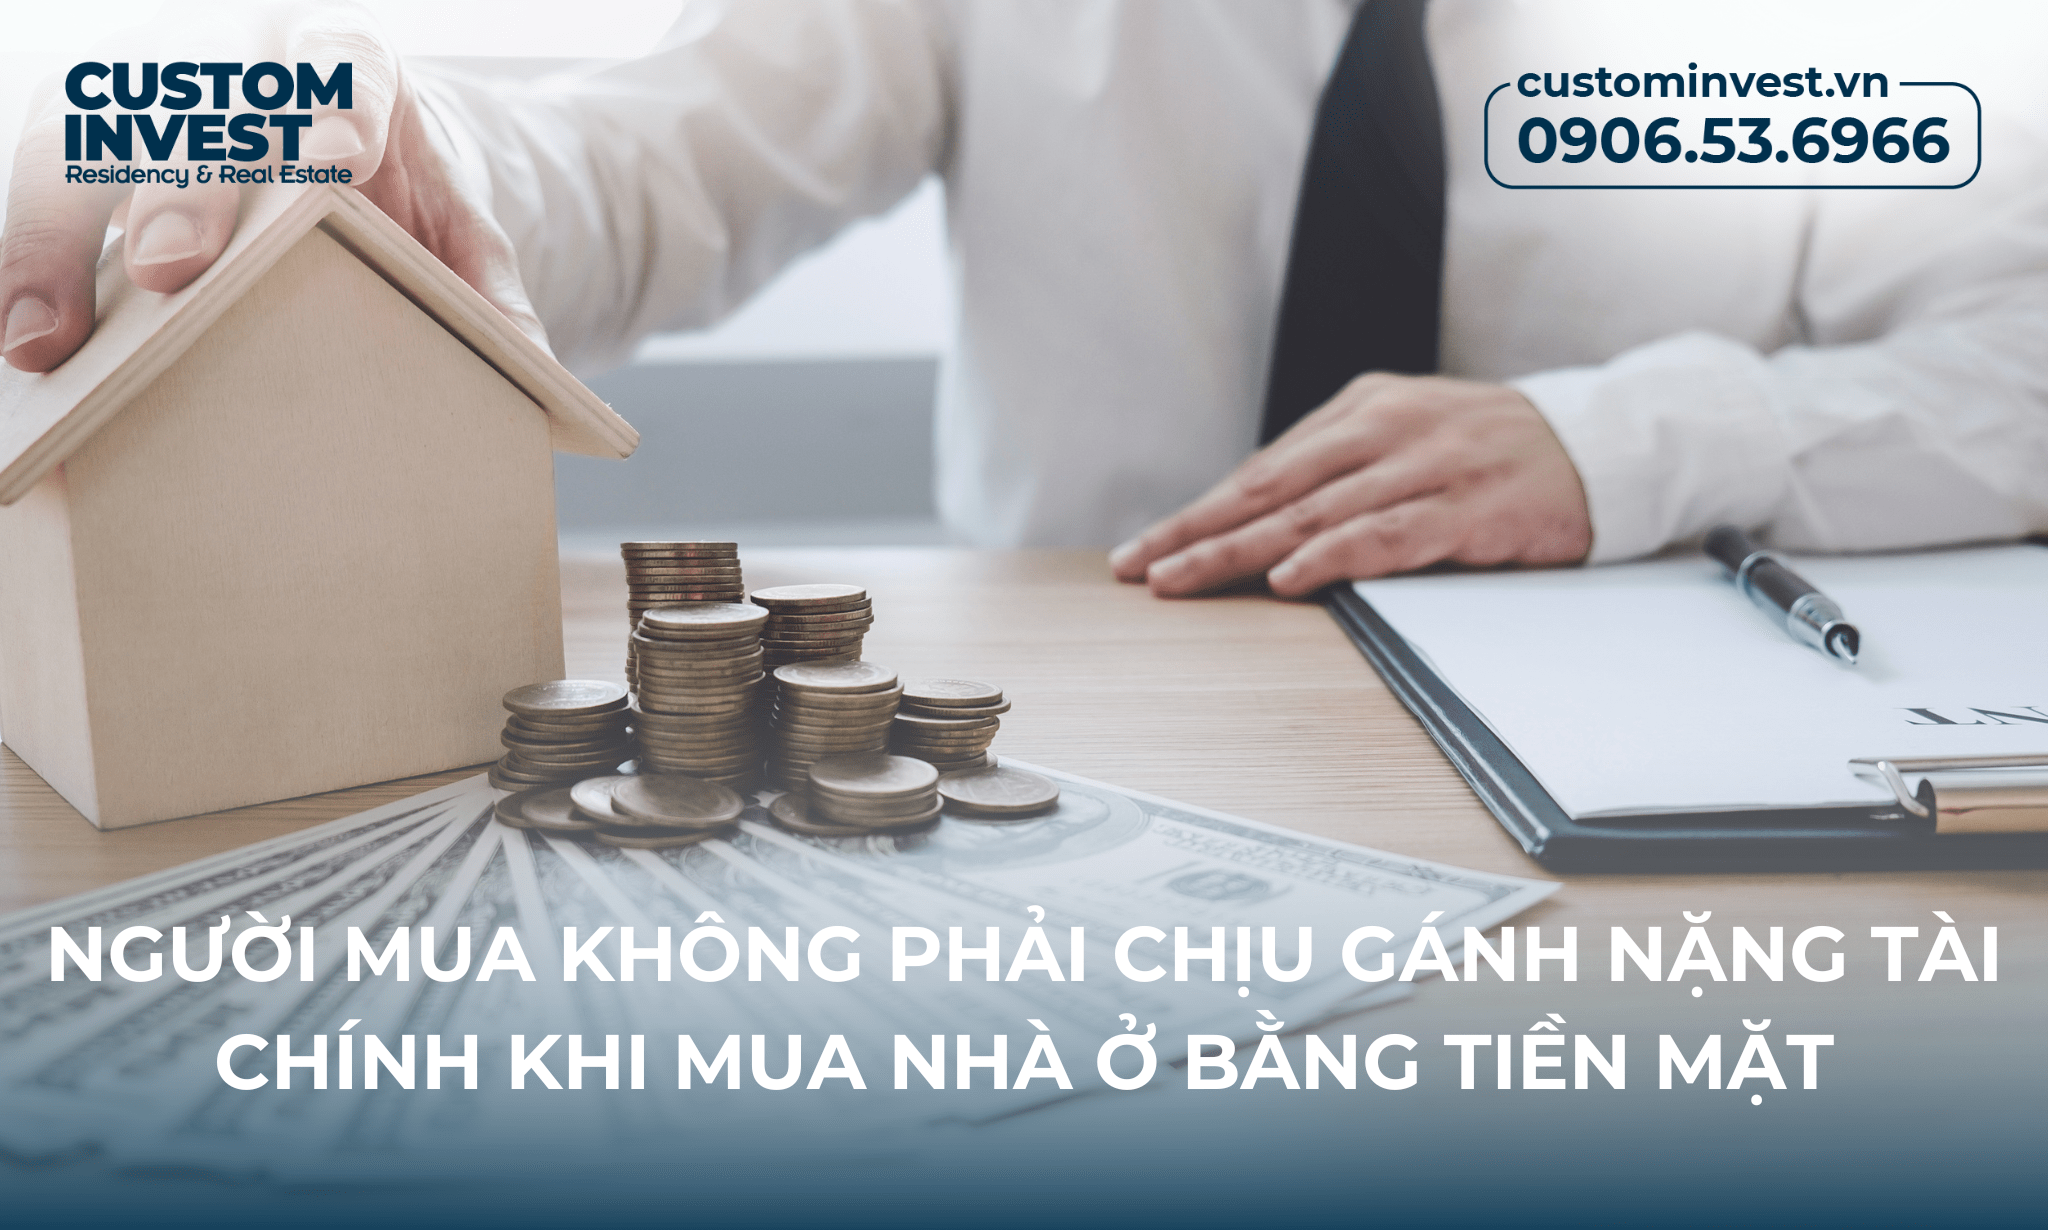 Người mua không phải chịu gánh nặng tài chính khi mua nhà ở bằng tiền mặt